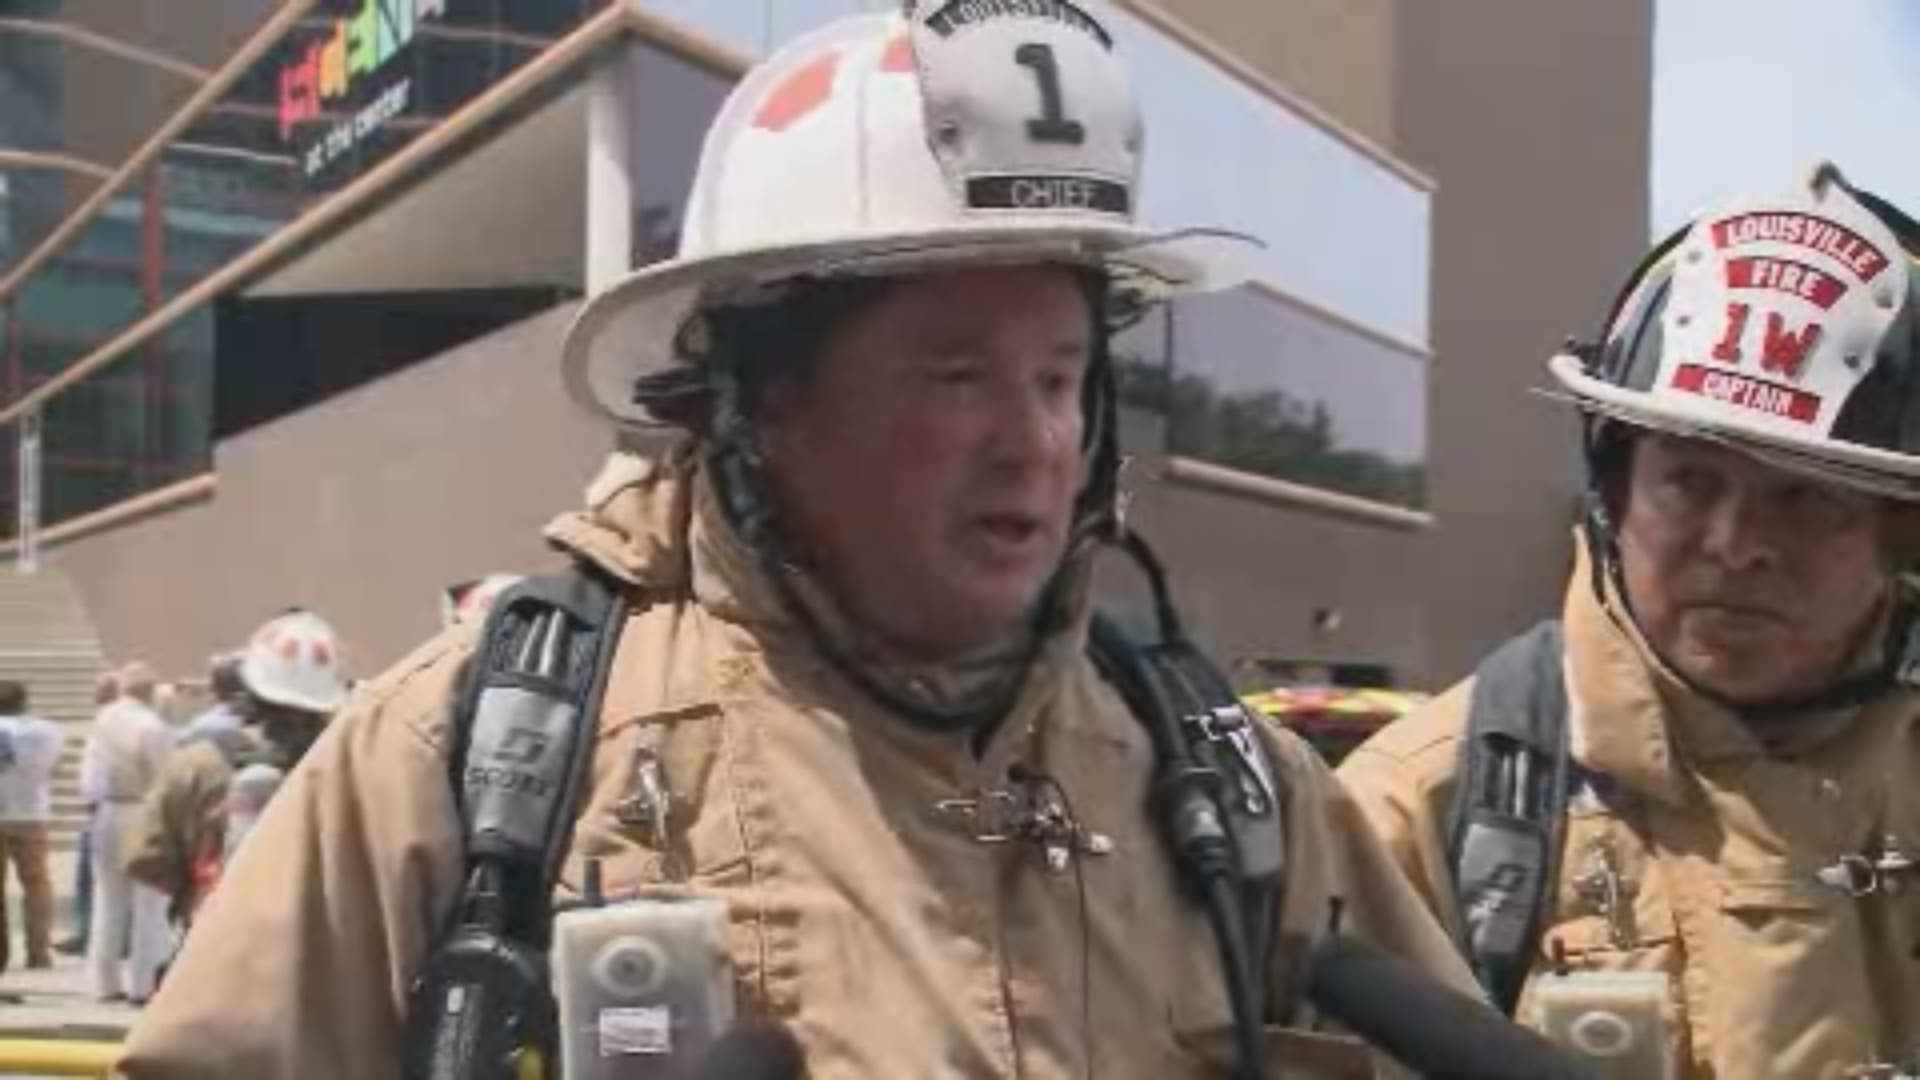 Louisville Fire chief gives update on Kentucky Center fire | www.semashow.com